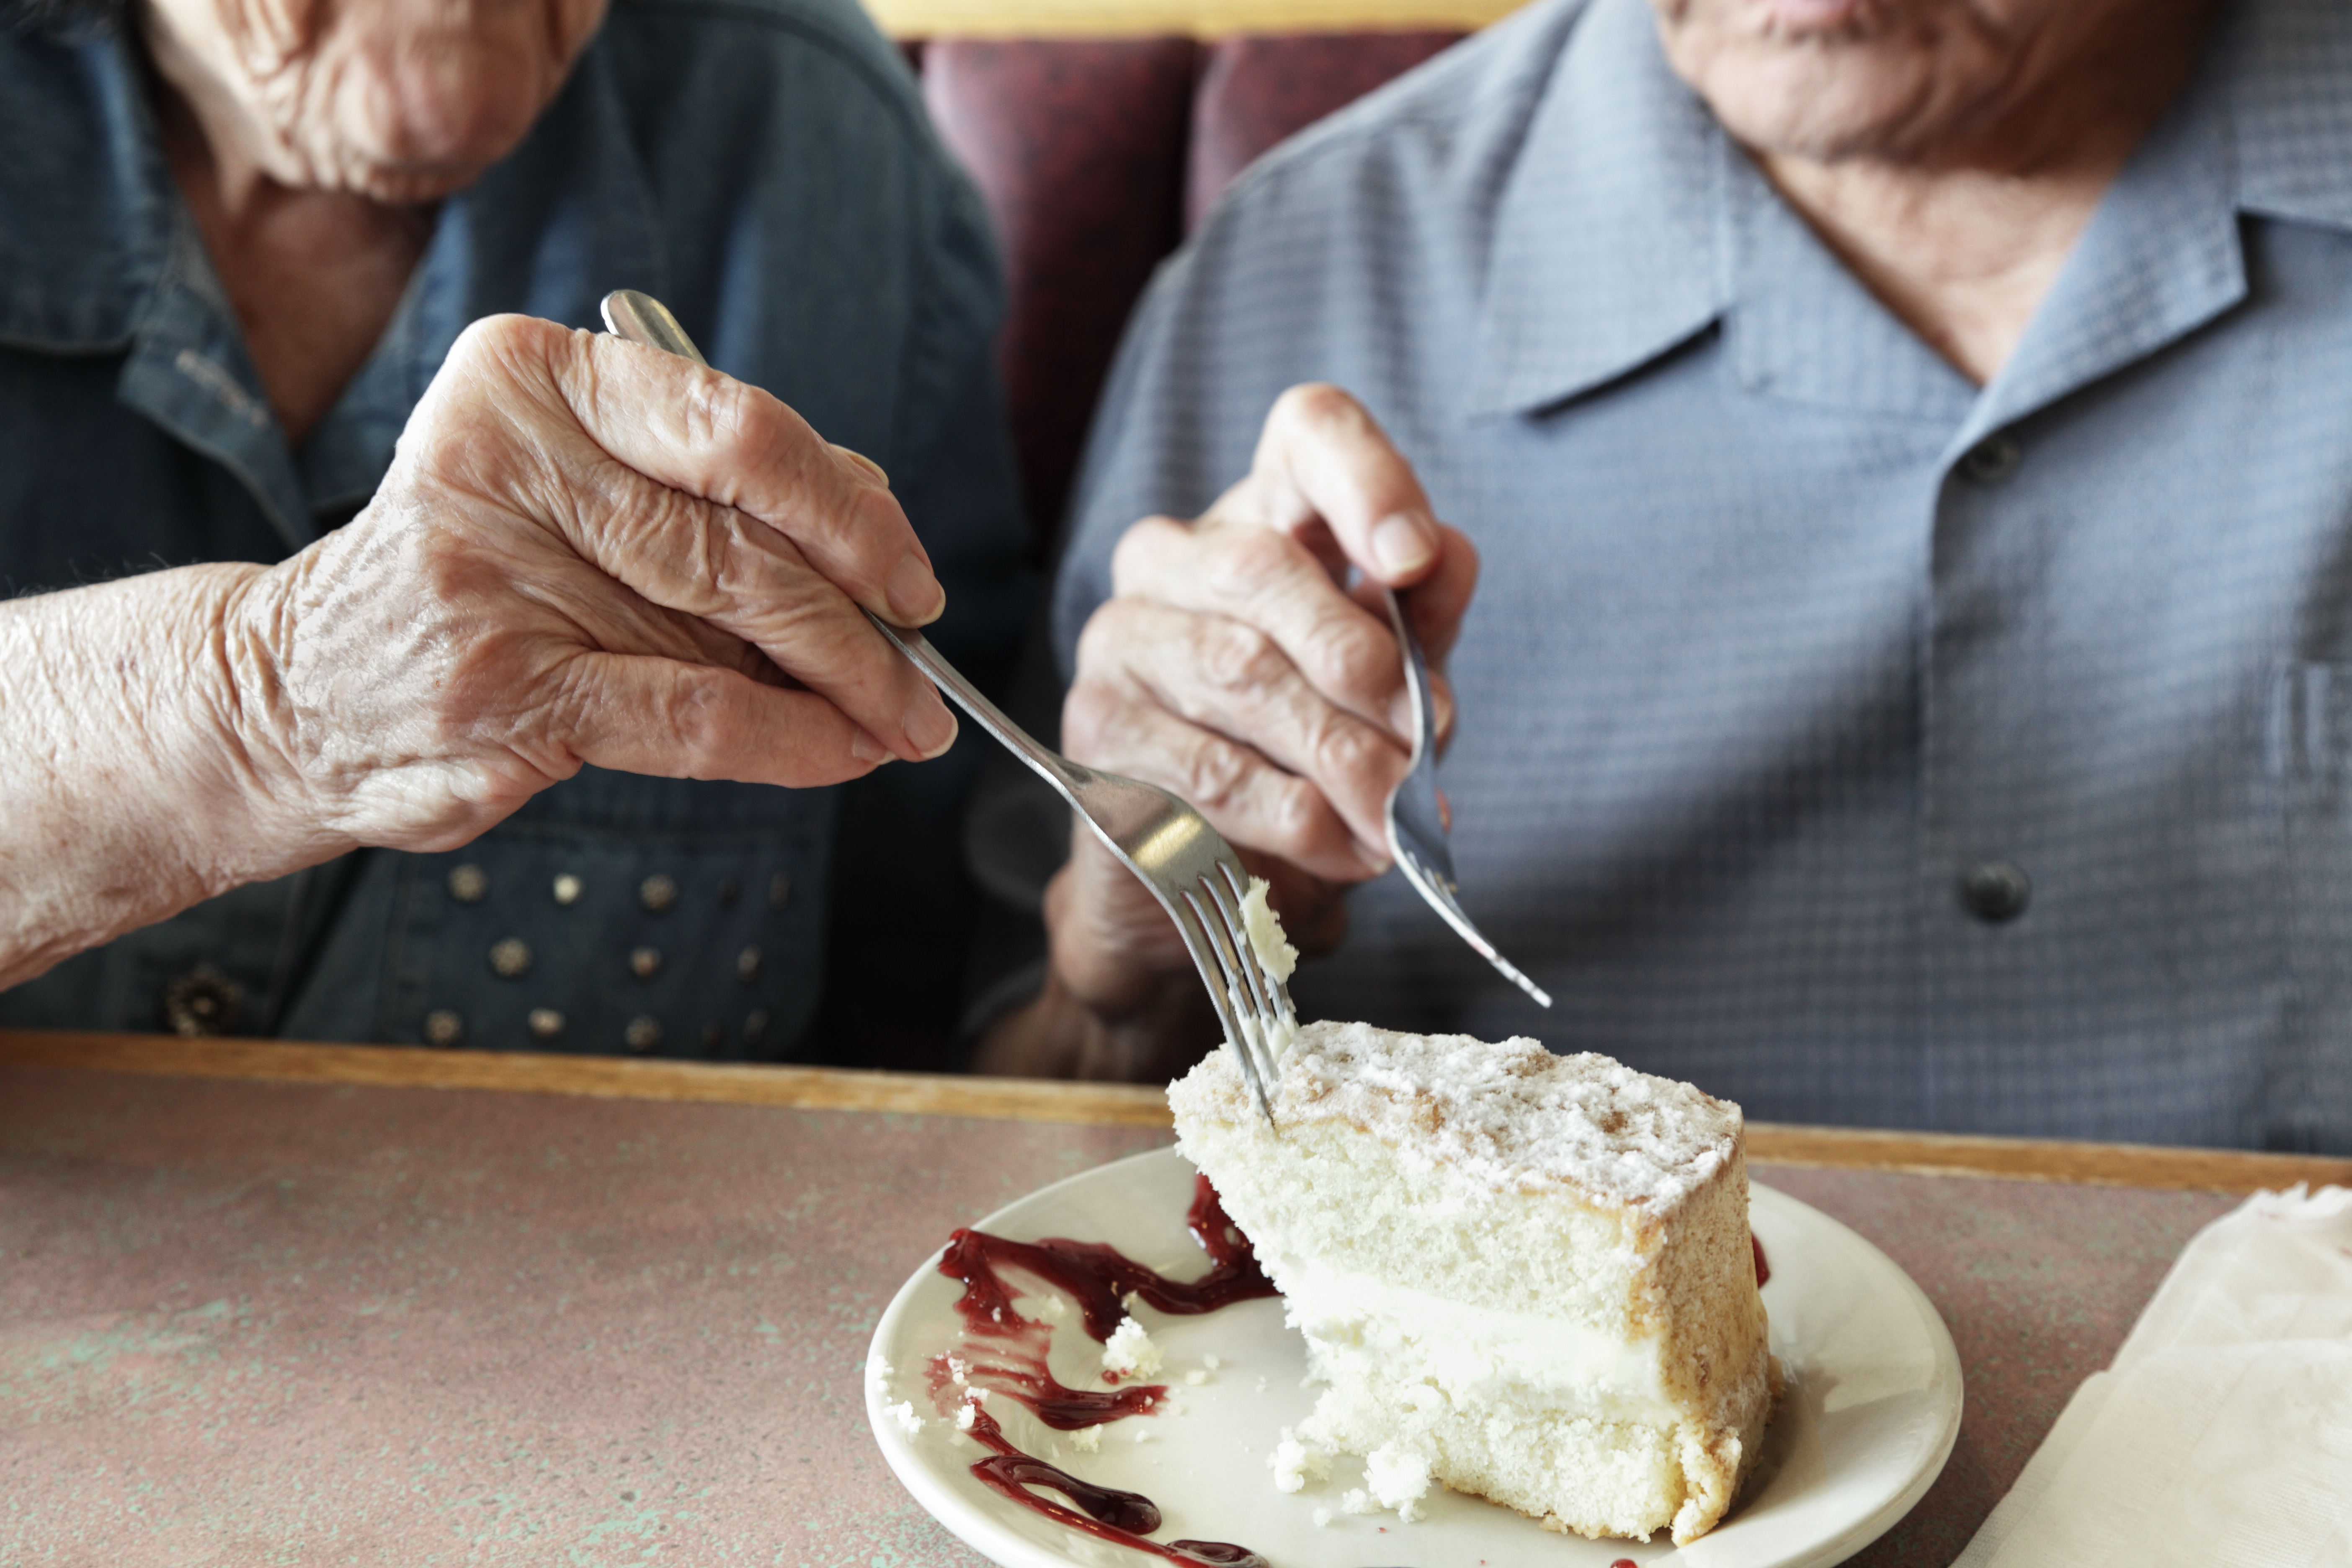 Con la tarjeta INAPAM los adultos mayores podrán acceder a muchos descuentos en restaurantes y tiendas de comida.
Foto Getty Images